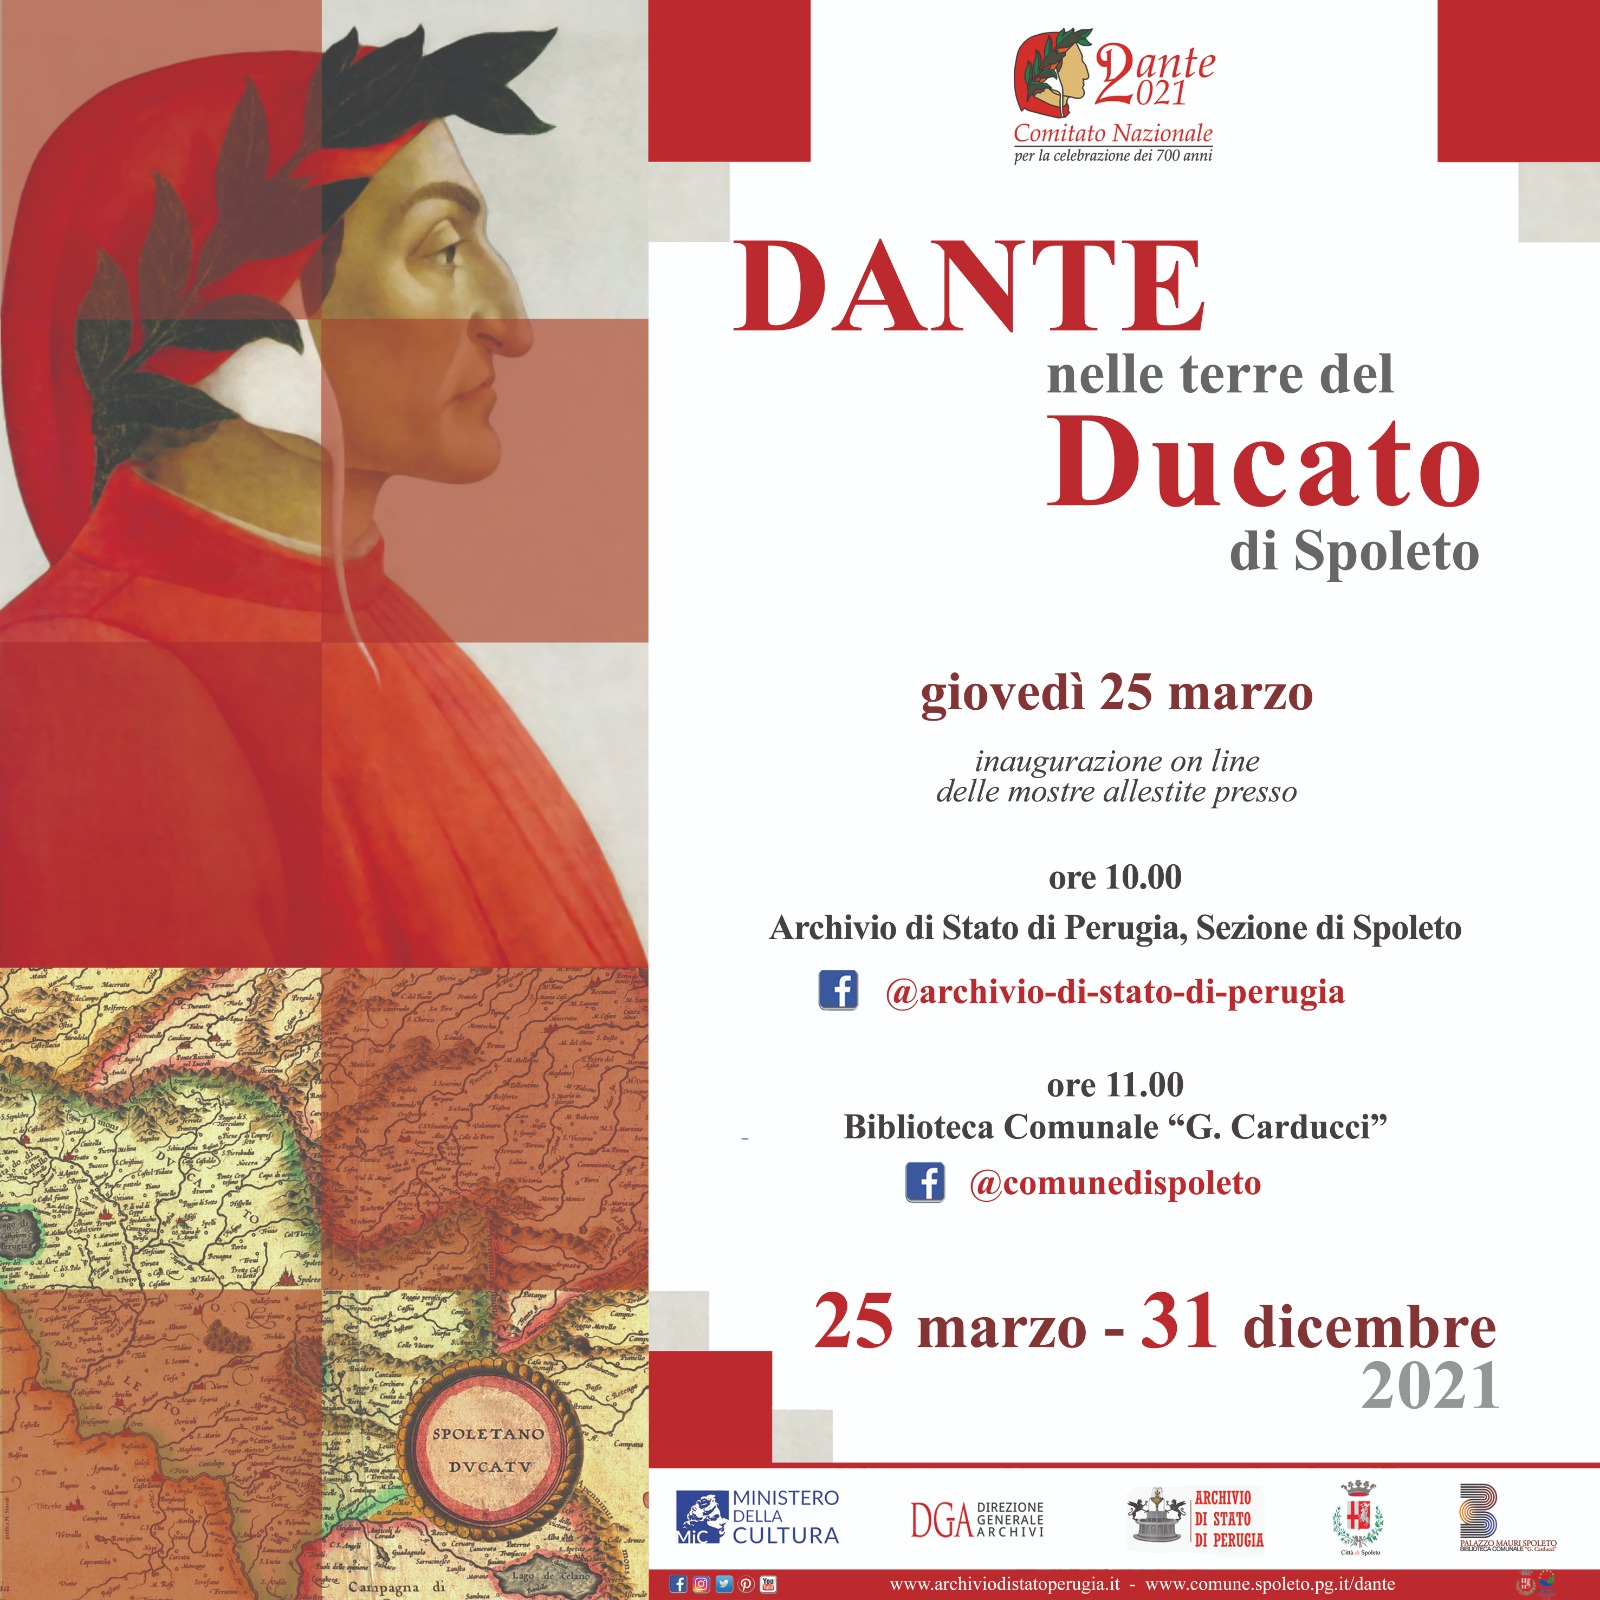 Dante nelle terre del Ducato